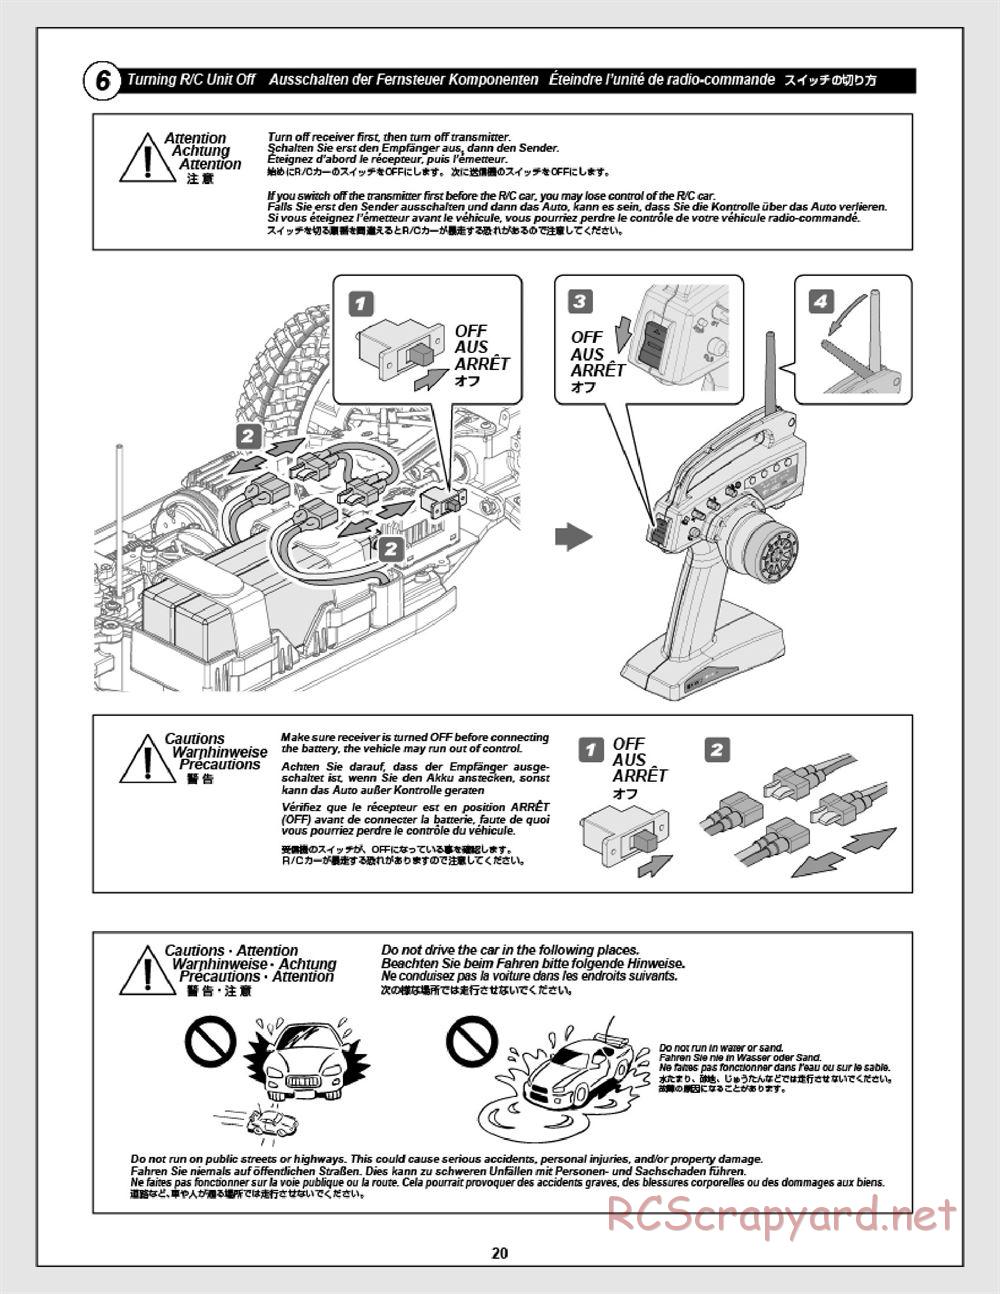 HPI - Apache SC Flux - Manual - Page 20